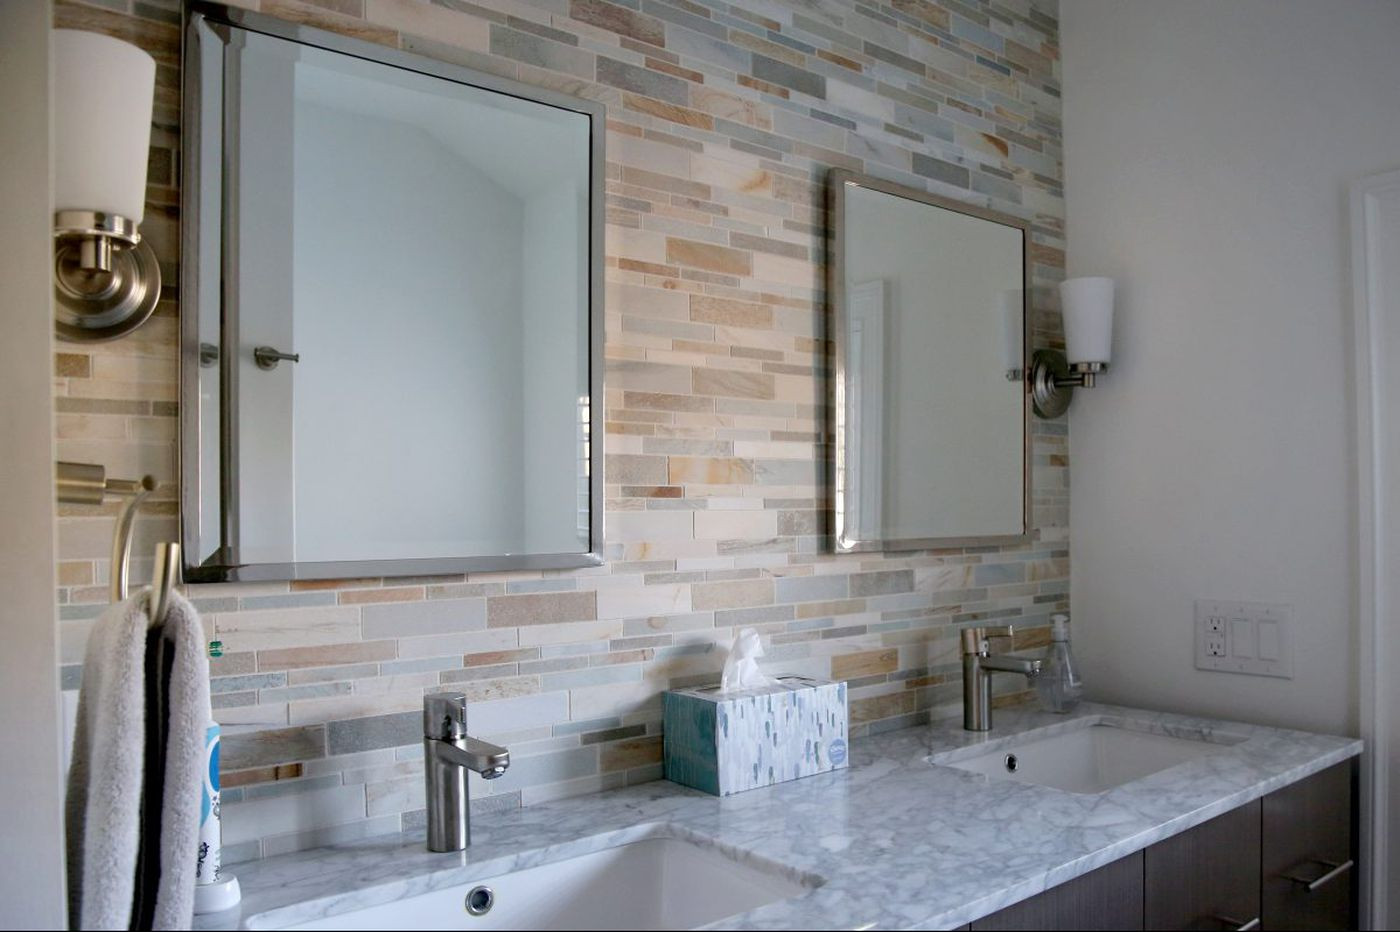 Bathroom Tile Shower
 How kitchen backsplashes and bathroom tile can make an